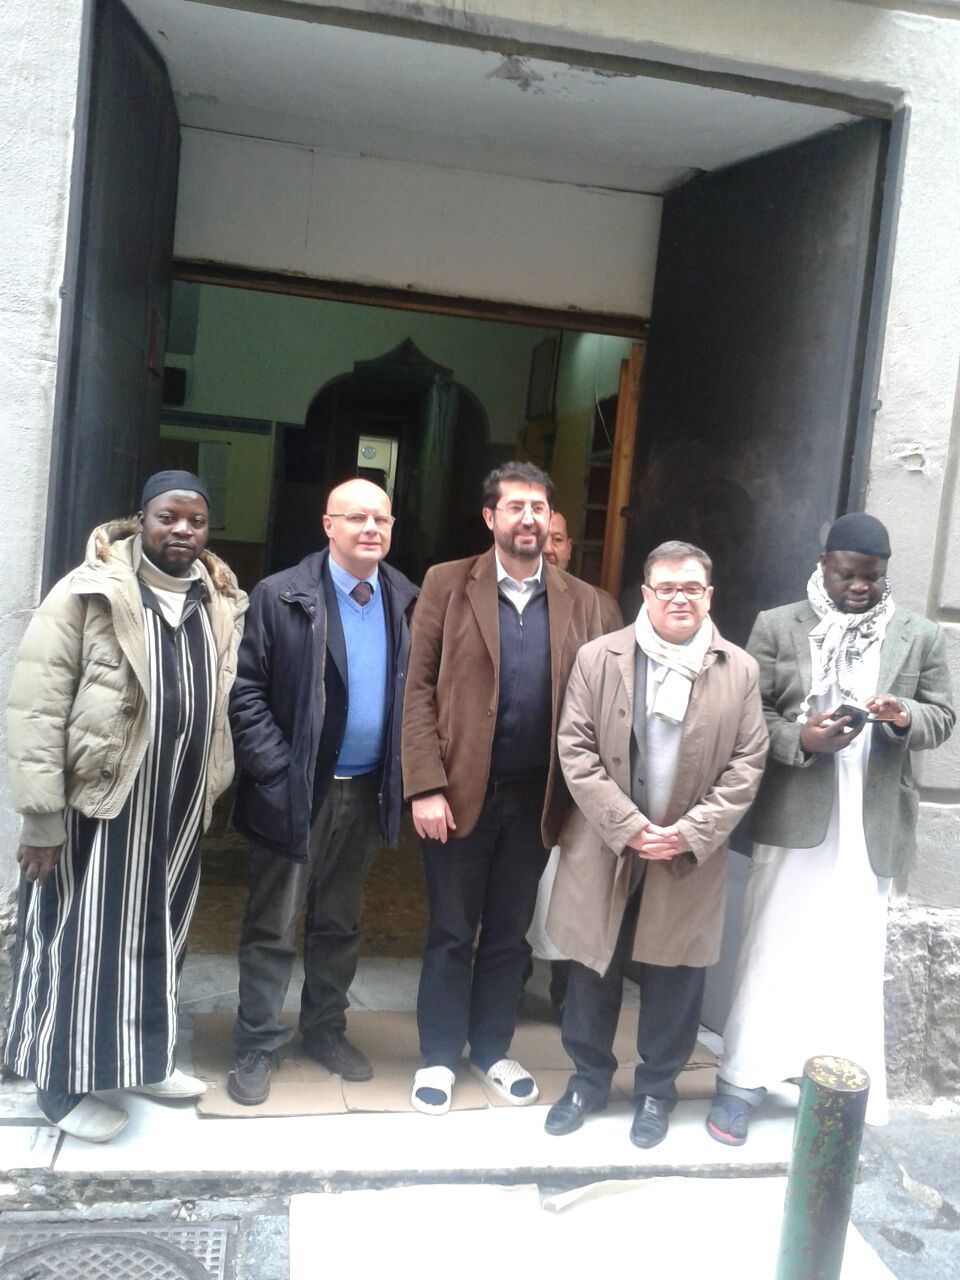 Console francese a Napoli Christian Thimonier ha visitato i locali adibiti all'esercizio del culto islamico nei pressi della storica Piazza Mercato